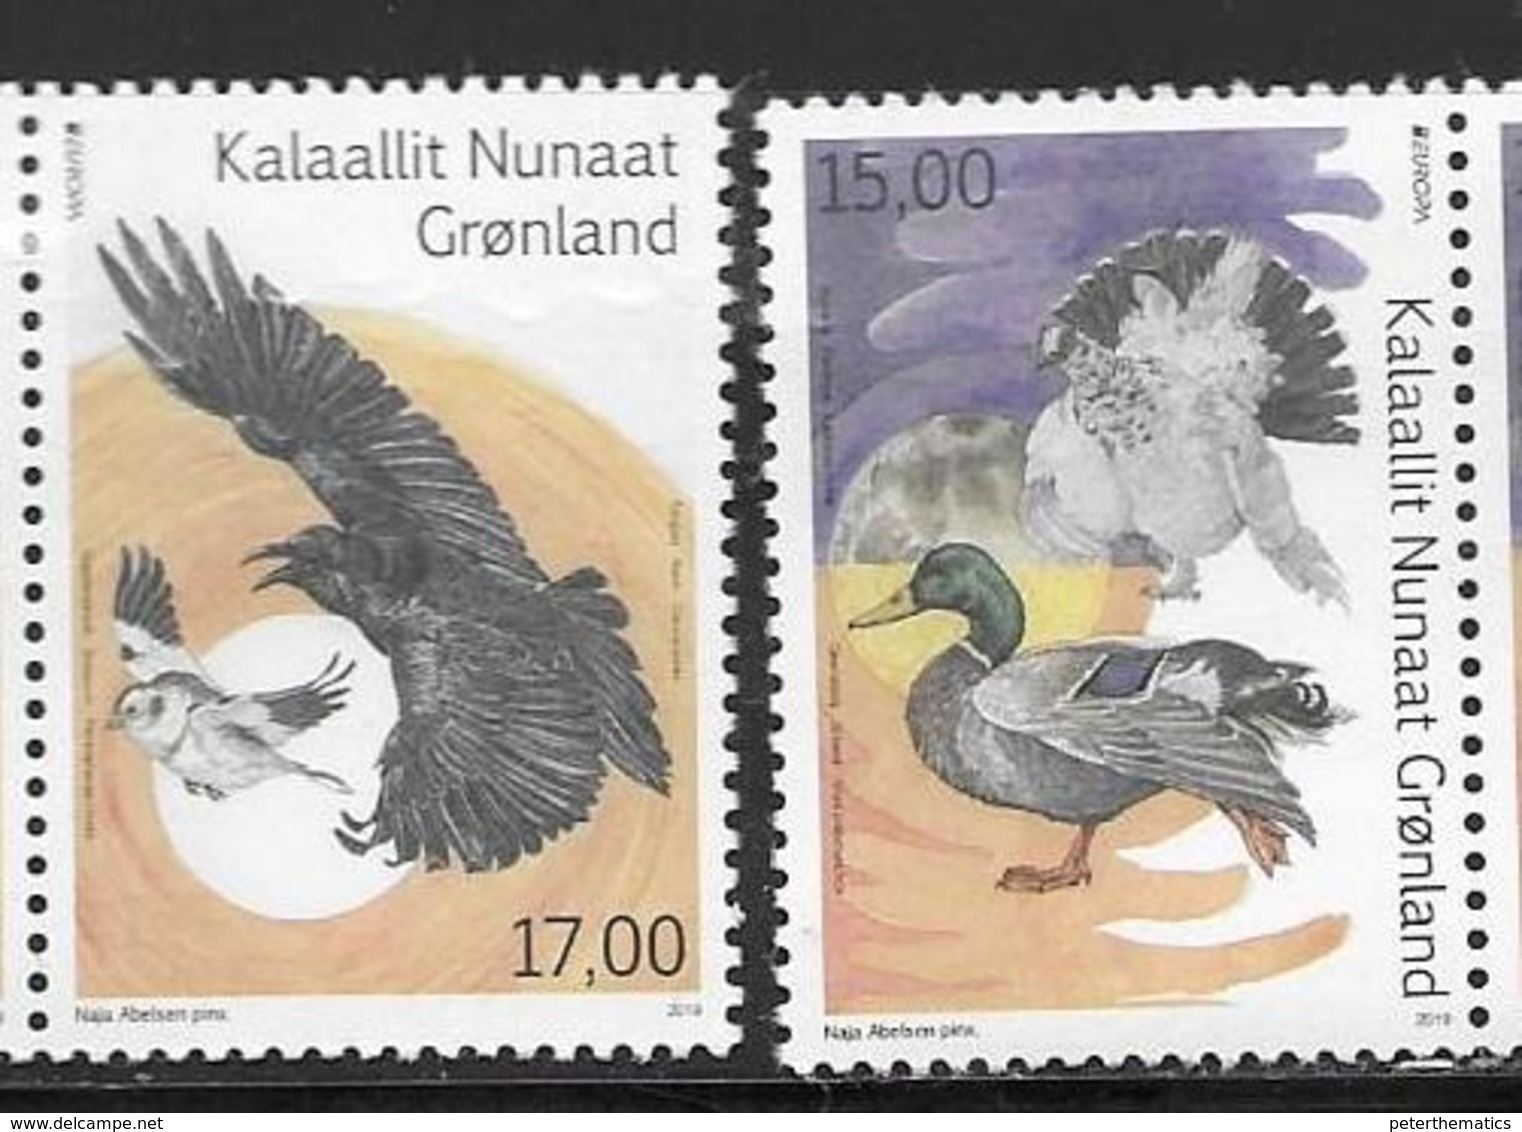 GREENLAND, 2019, MNH,EUROPA, BIRDS, DUCKS,2v - 2019